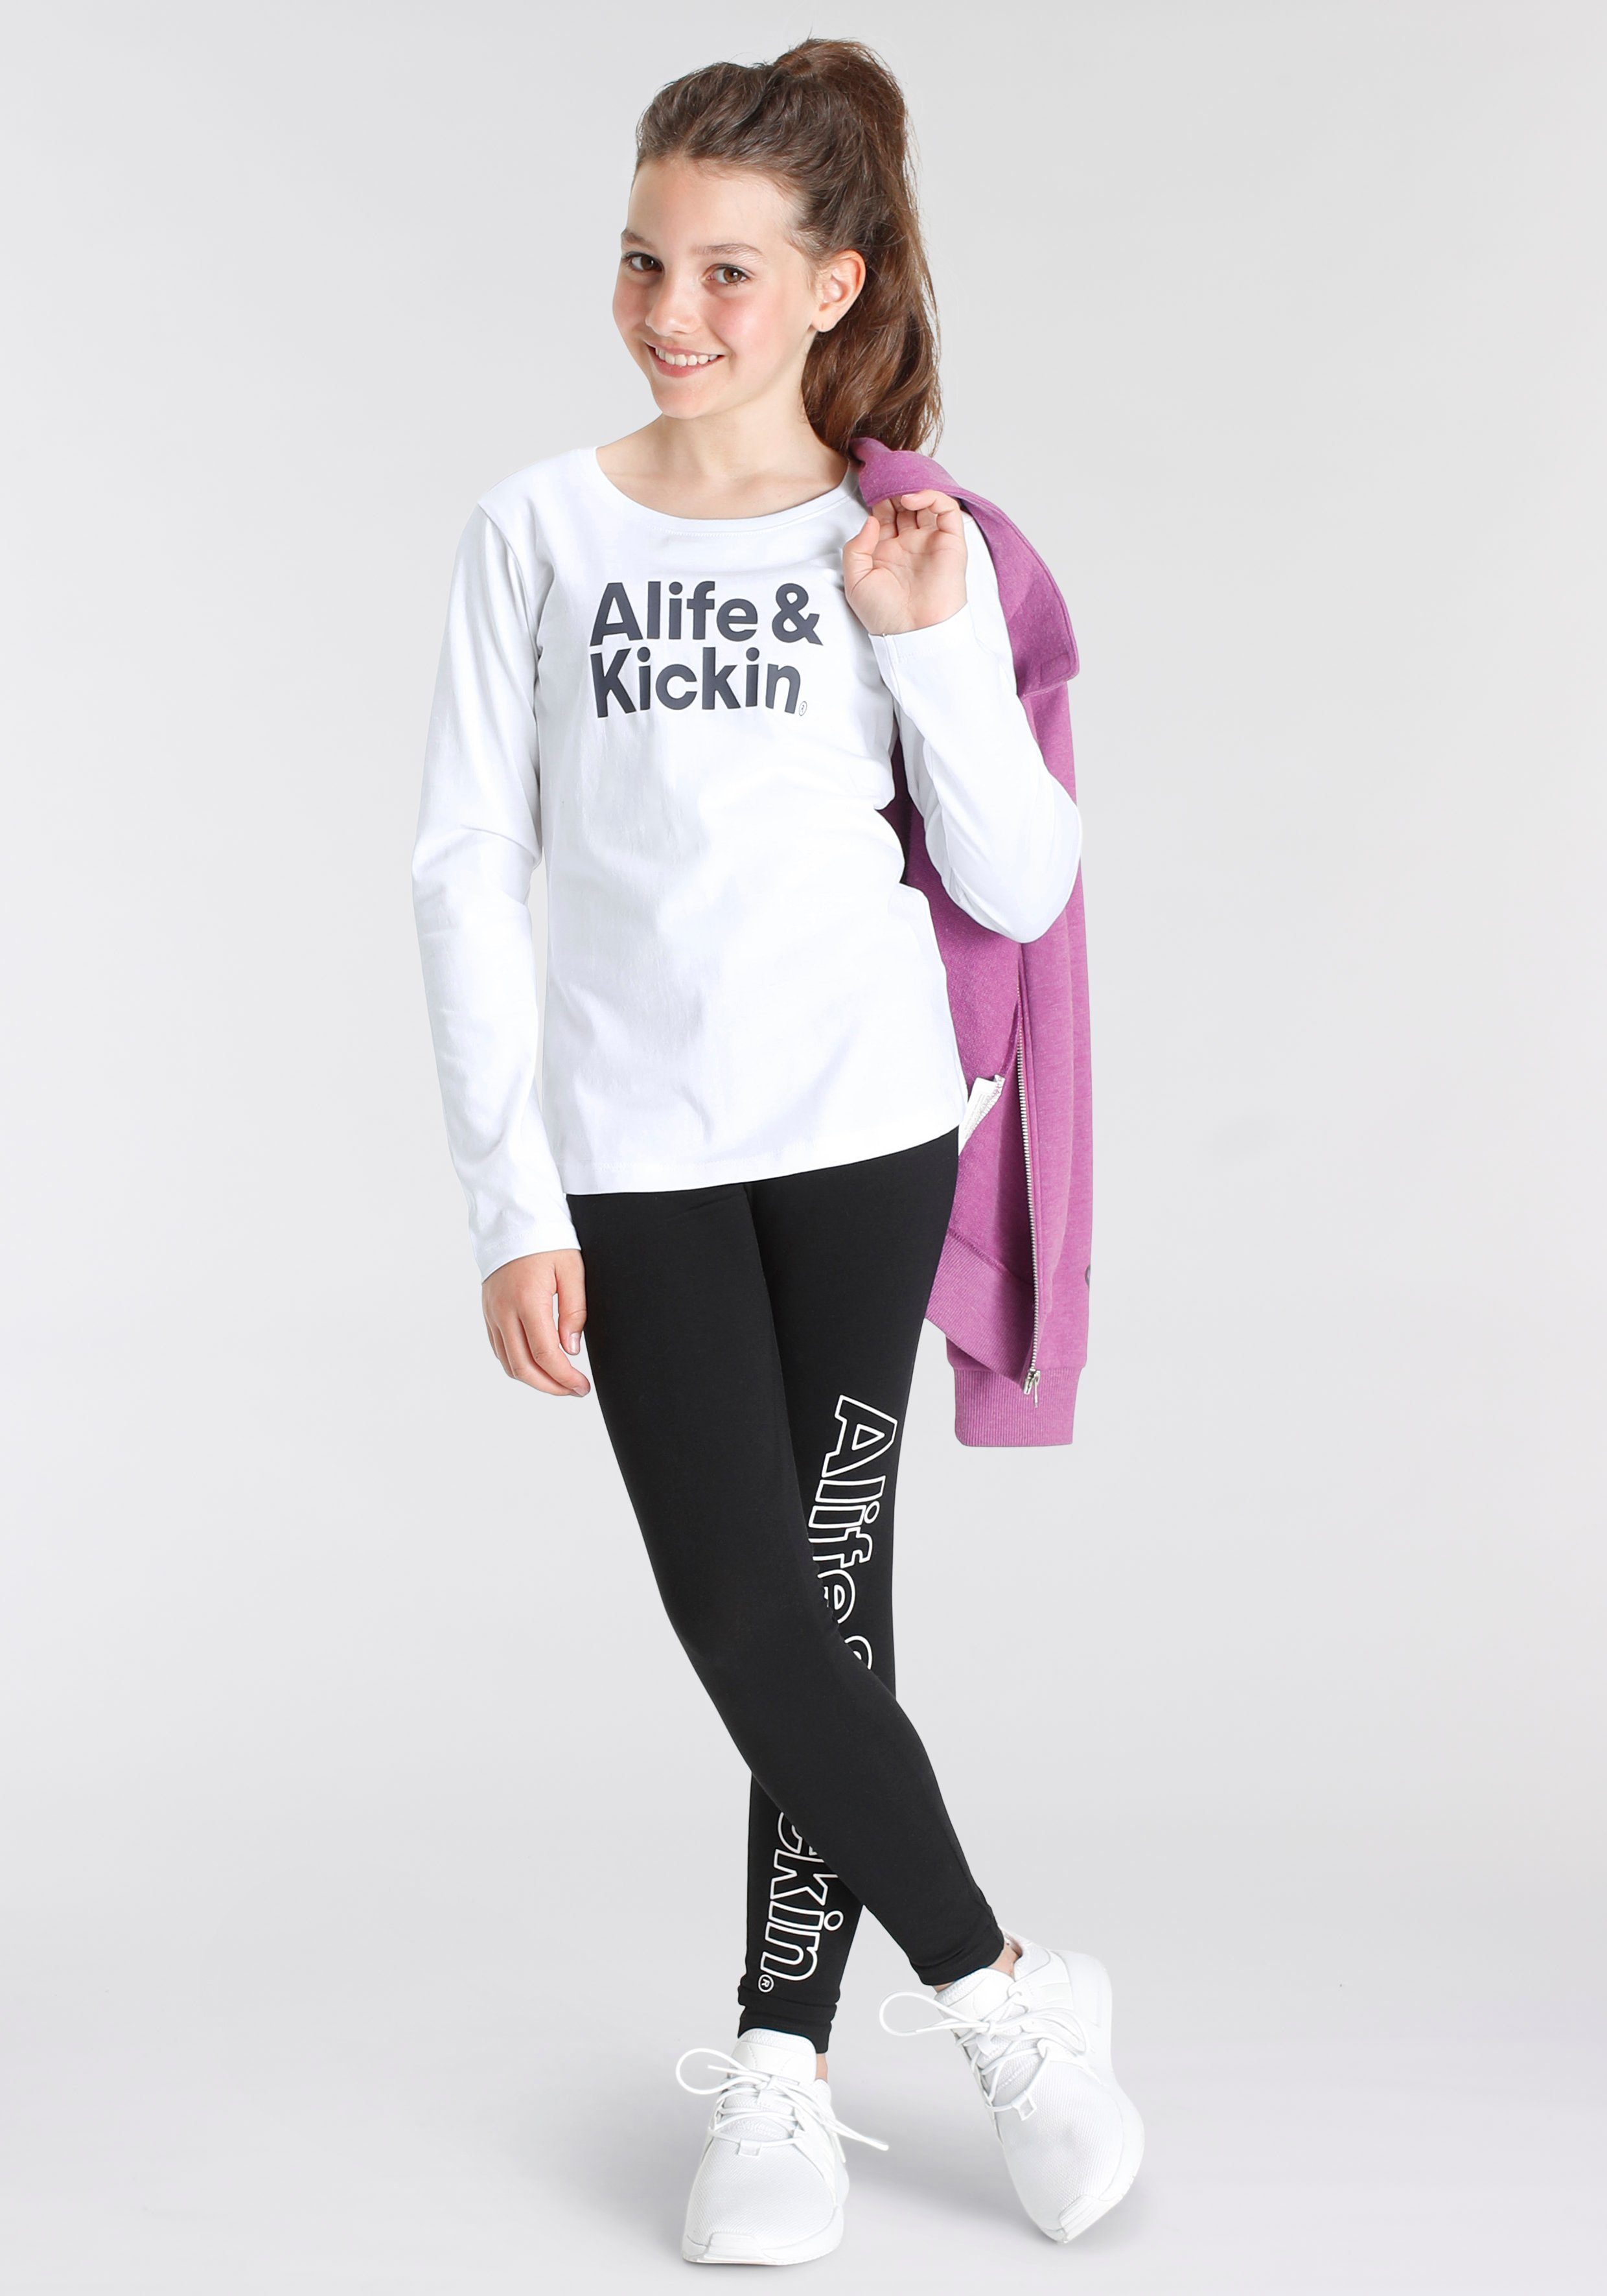 NEUE Druck Kickin Alife mit & Kids. MARKE! Alife Kickin & Langarmshirt für Logo